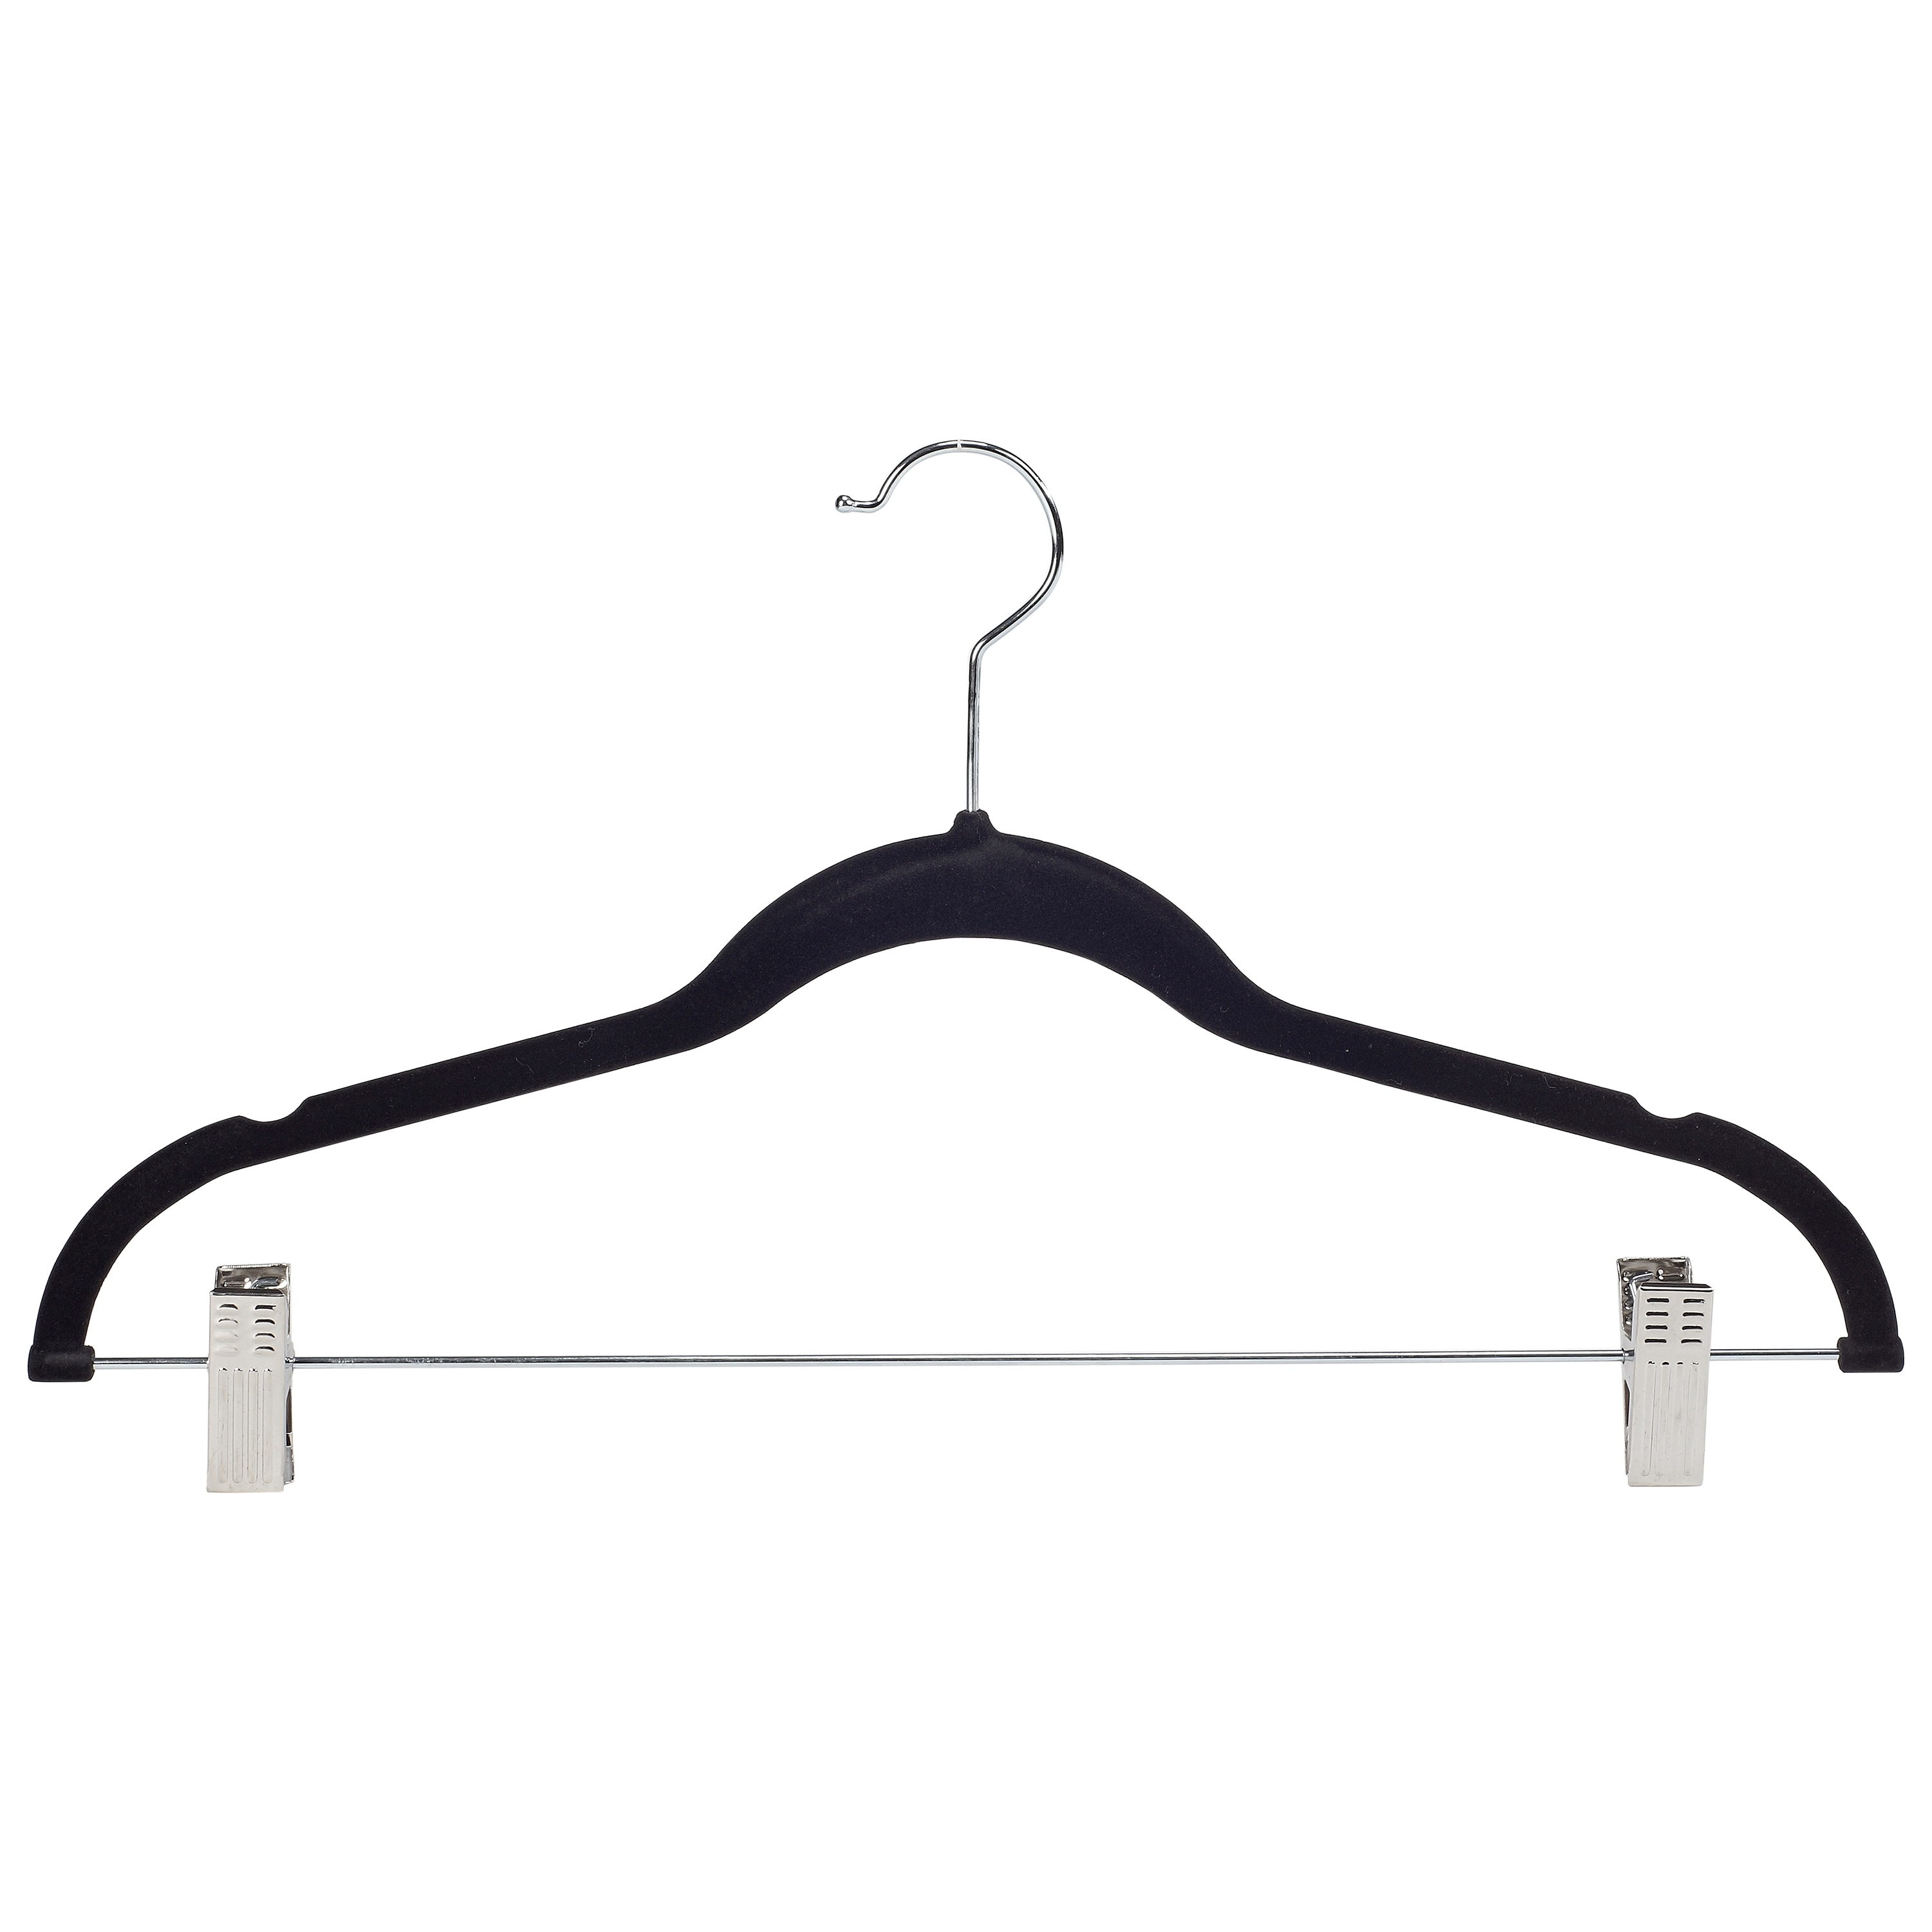 Simplify 25 Pack Slim Velvet Suit Hangers in Gray